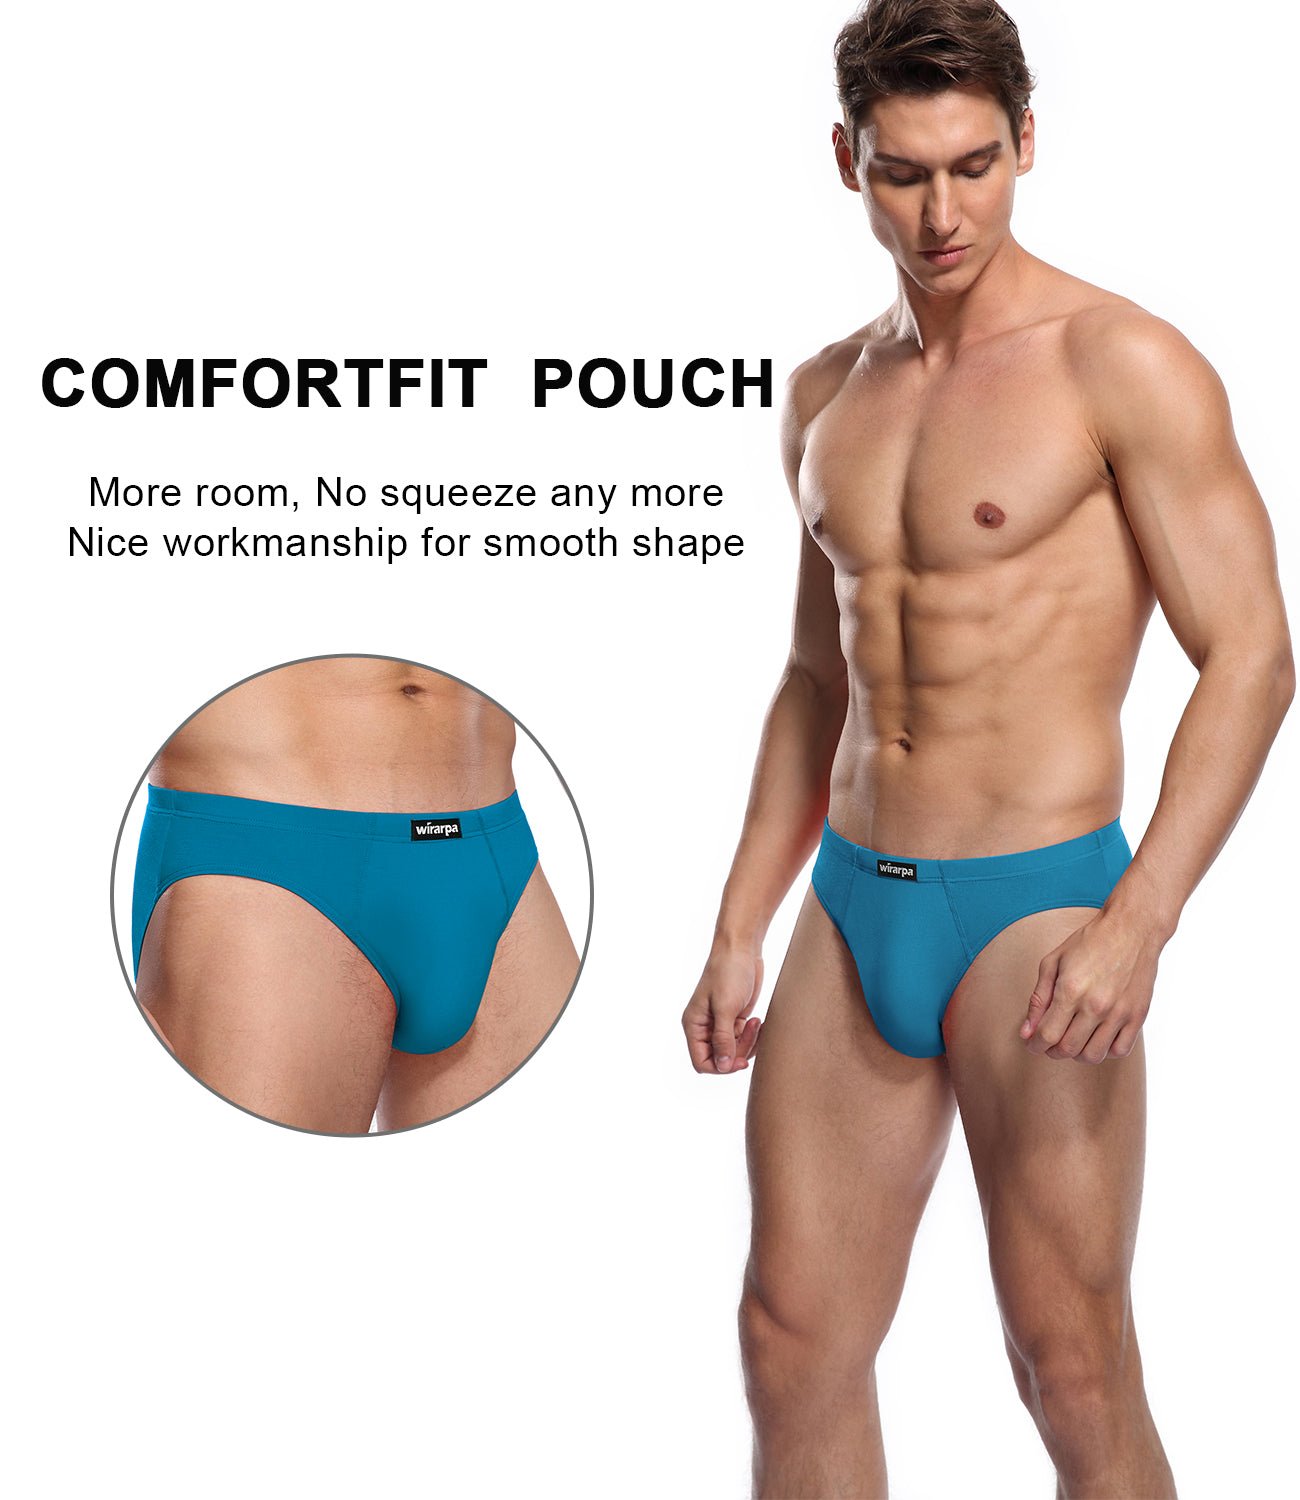  Wirarpa Mens Micro Modal Trunk Underwear Soft